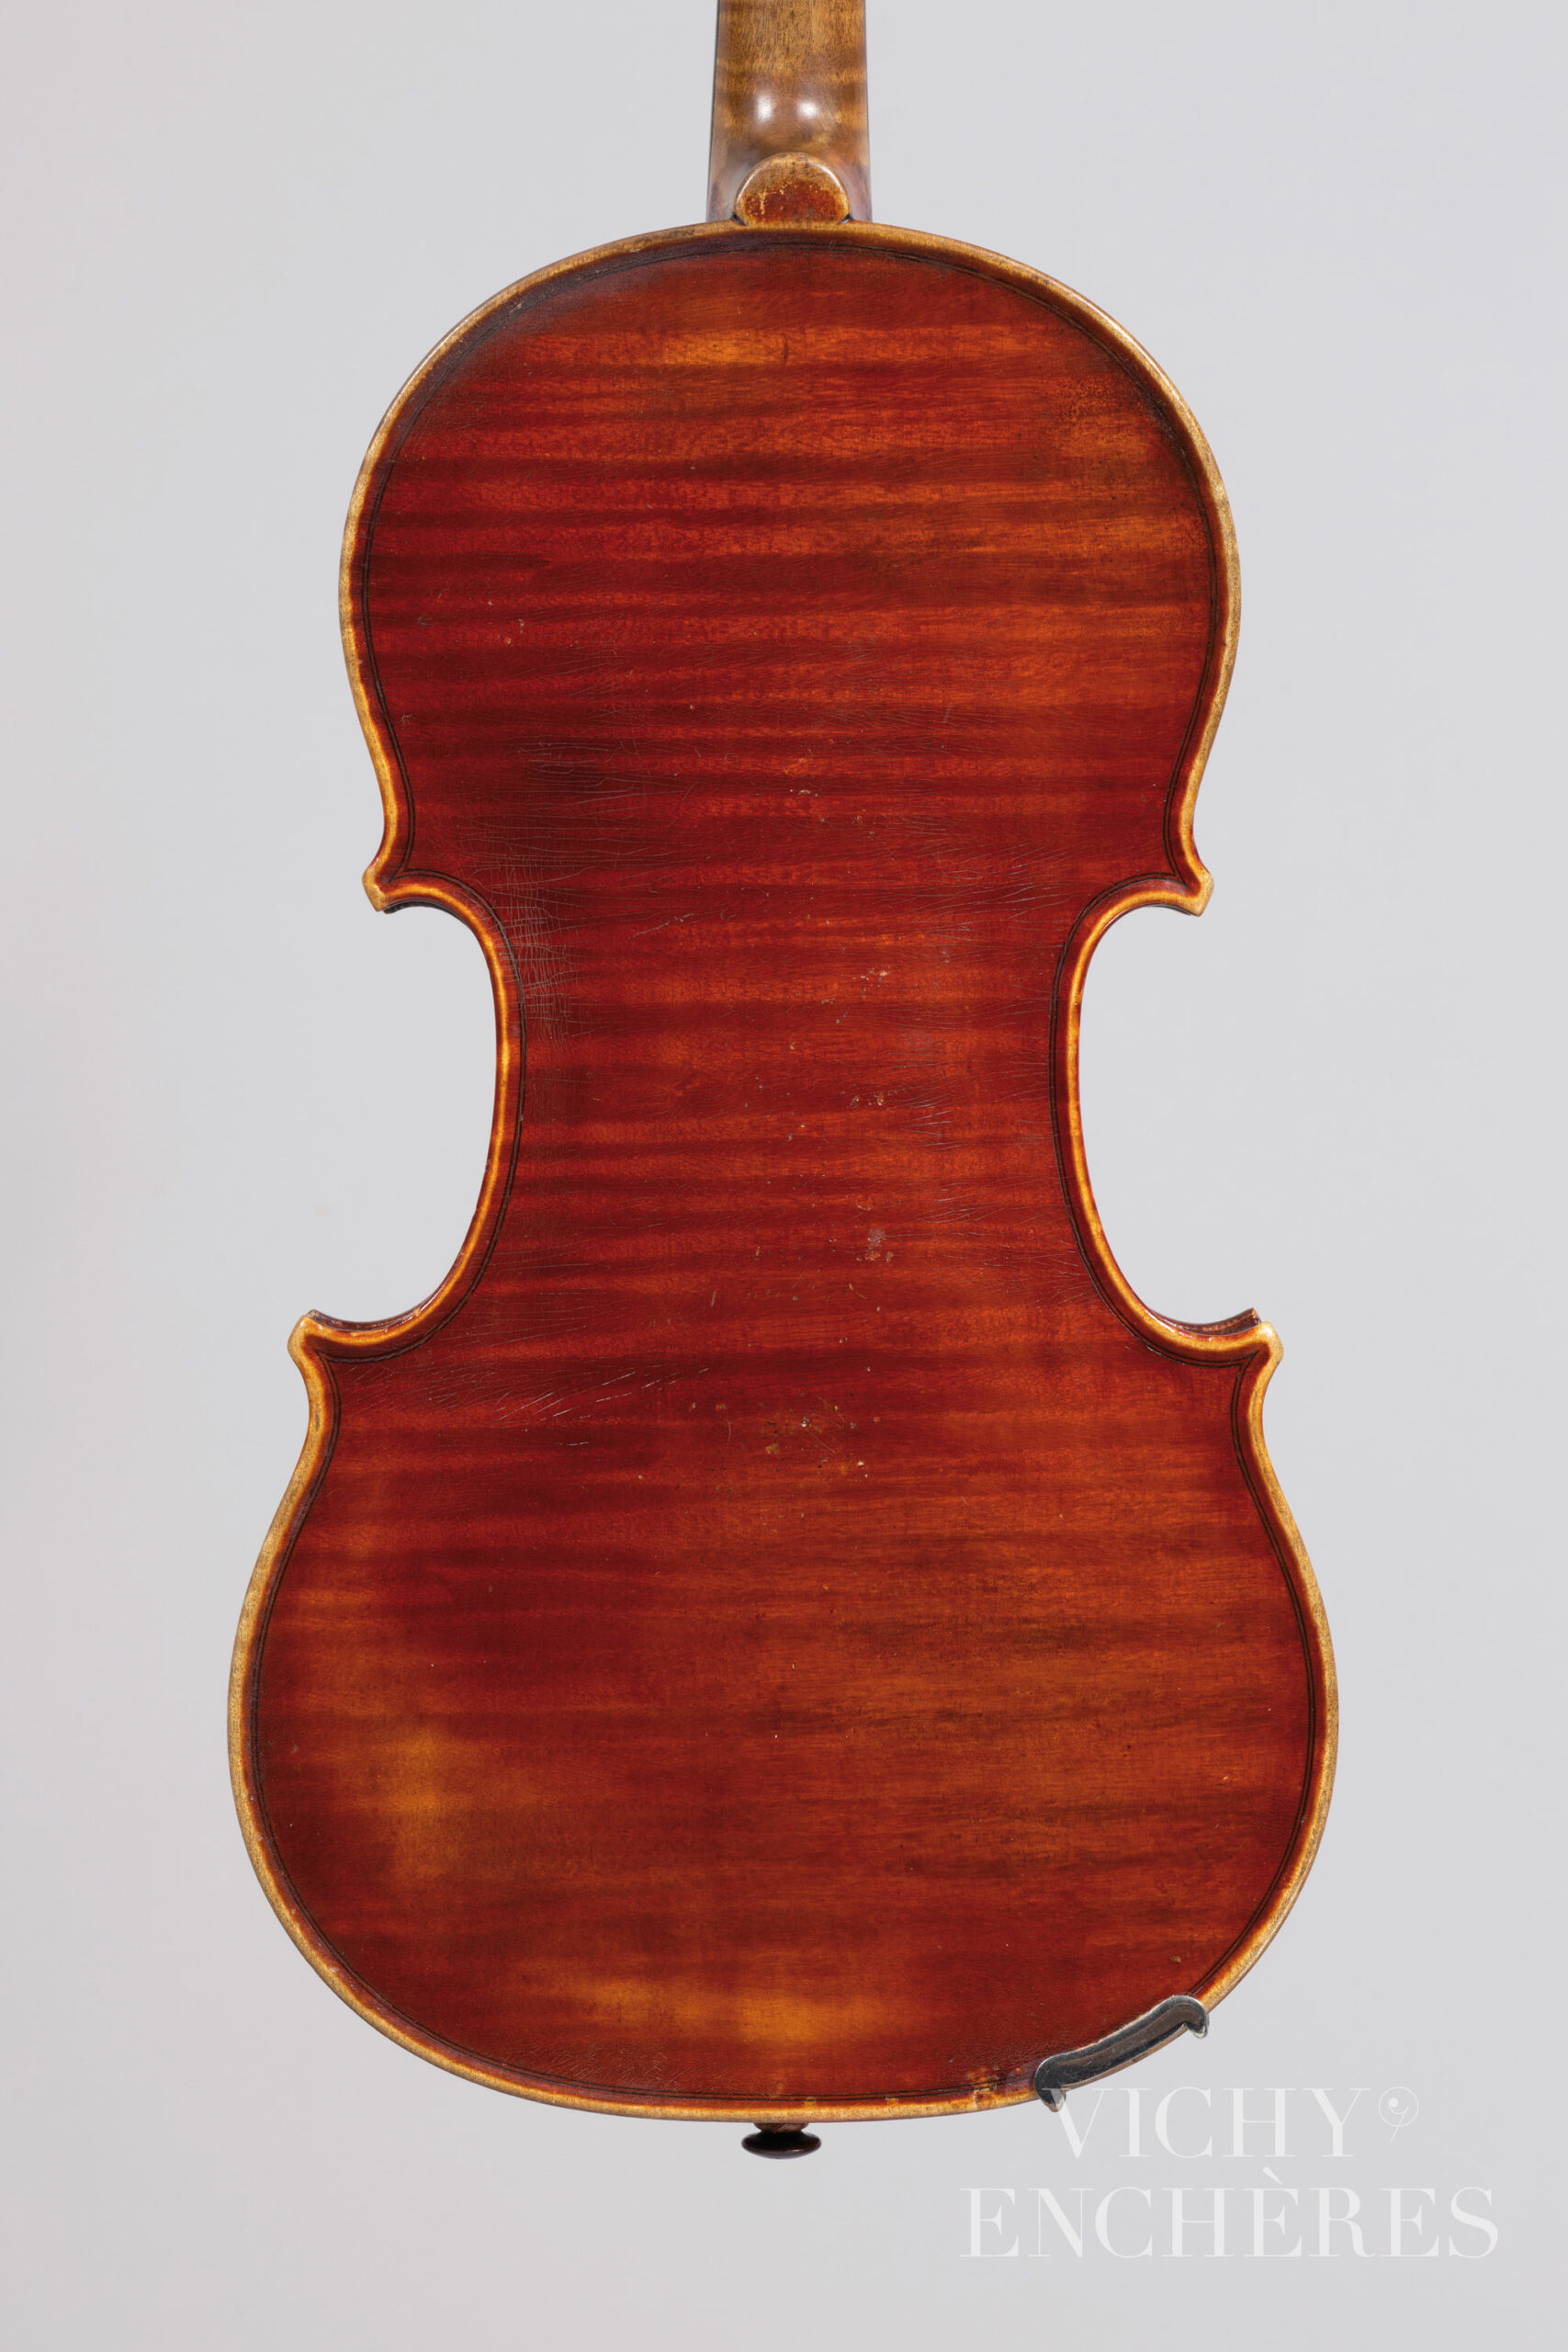 Violon d'Annibal FAGNOLA Instrument mis en vente par Vichy Enchères le 1er décembre 2022 © Christophe Darbelet